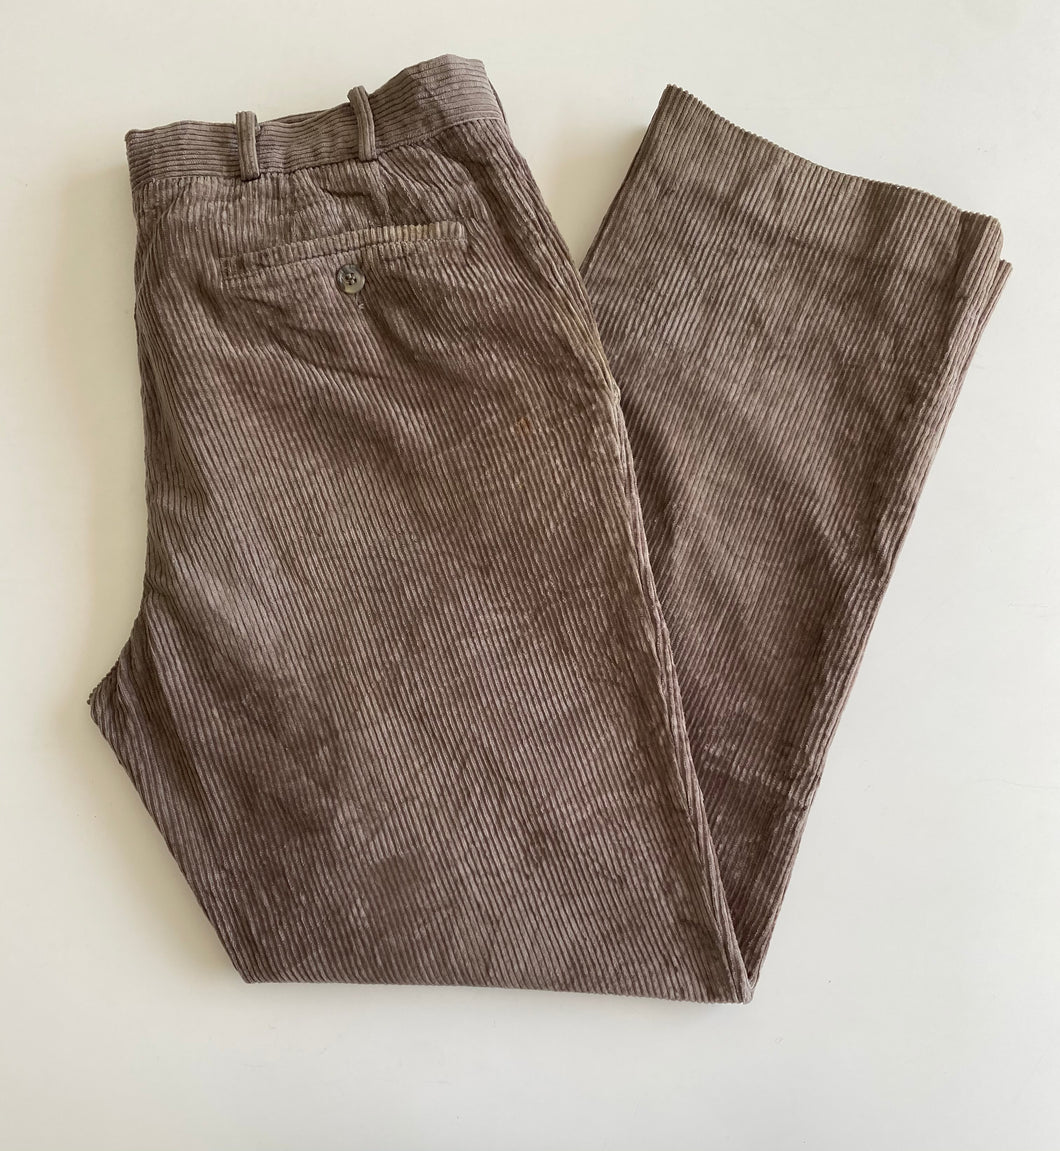 Corduroy Pants W34 L30